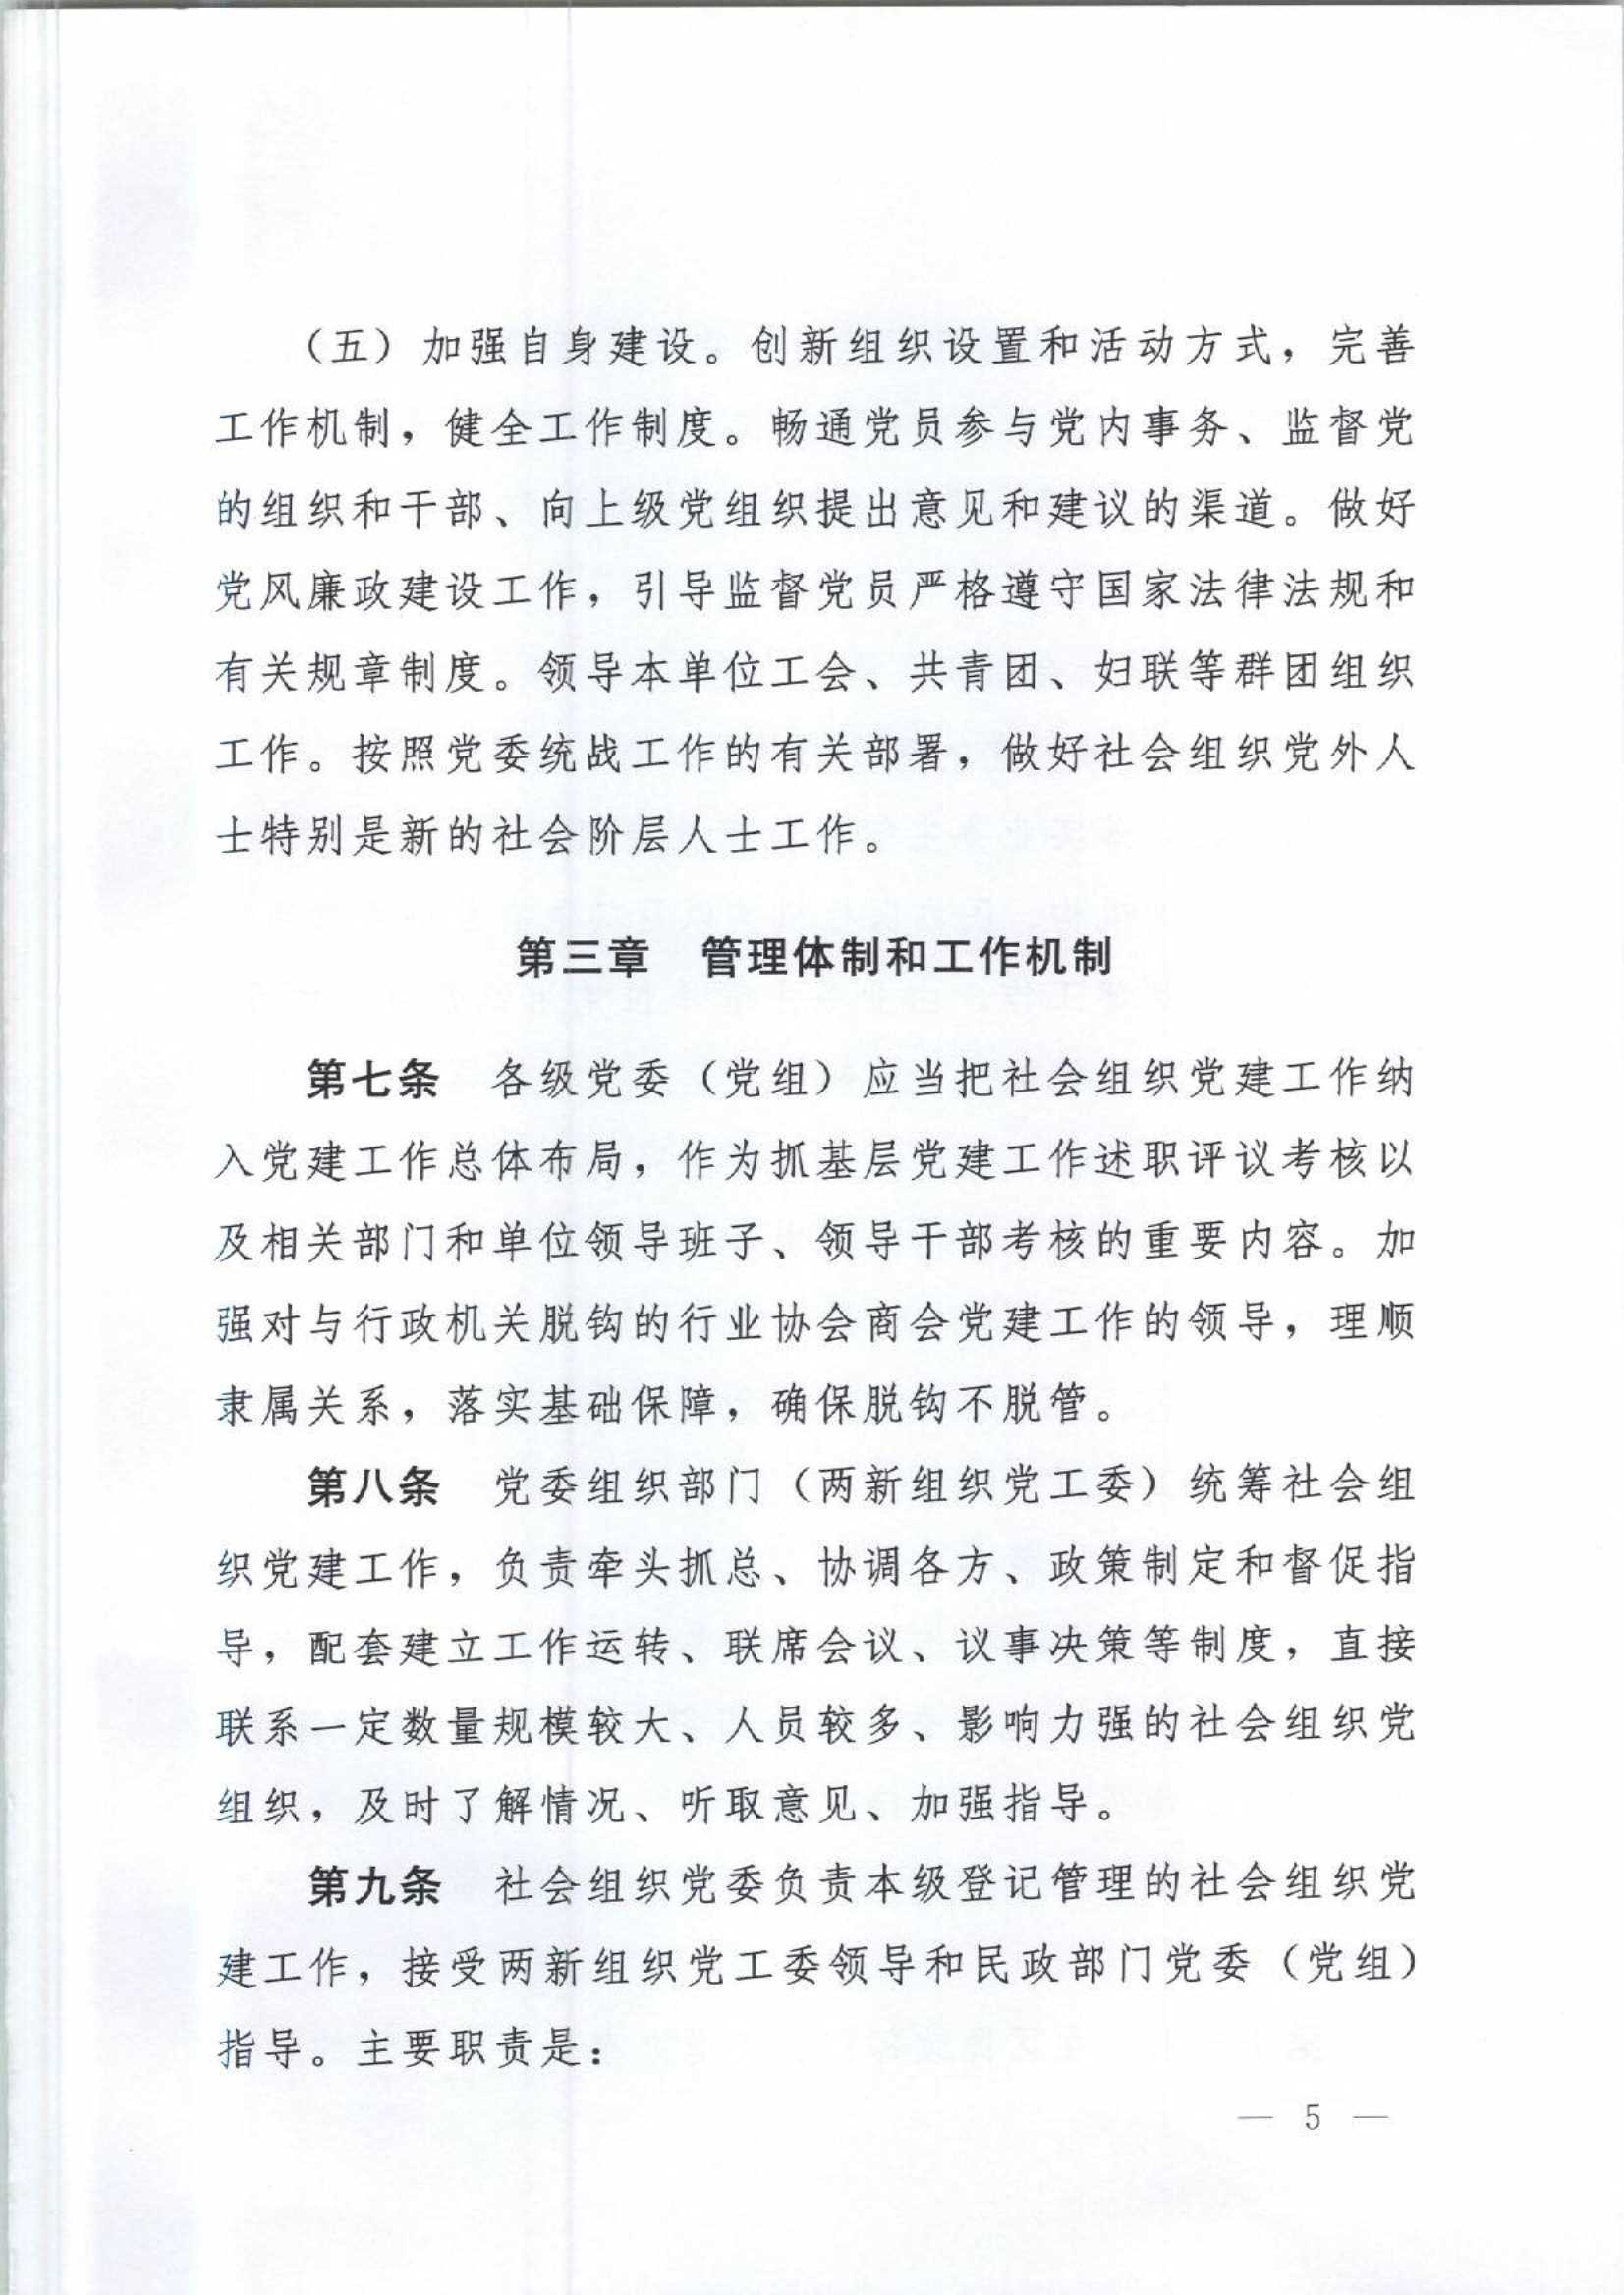 4.深圳市社会组织党的建设工作规定_5.Jpeg